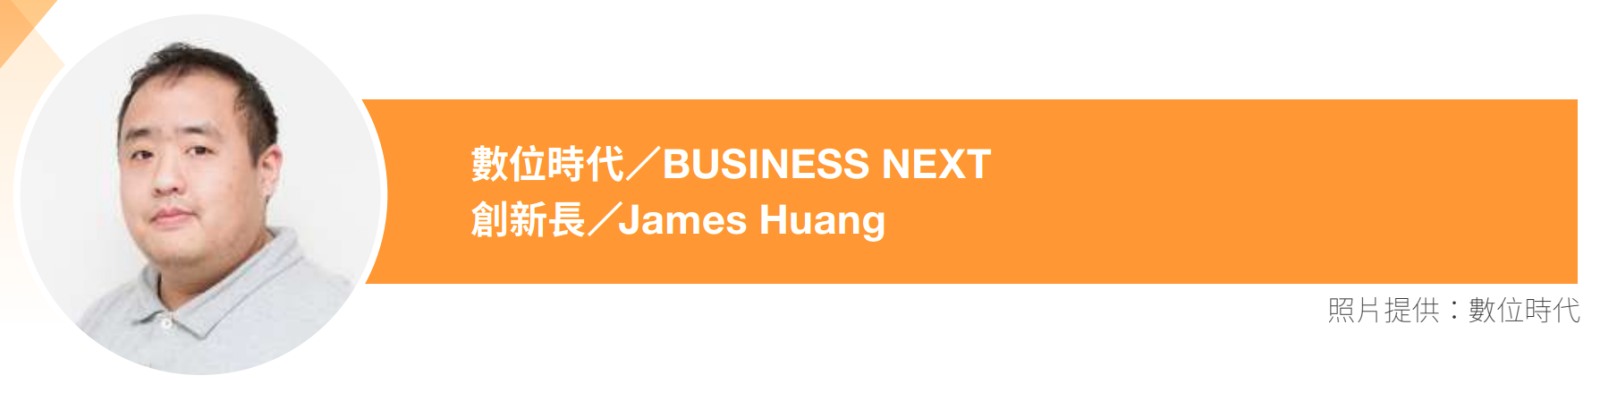 數位時代創新長James Huang